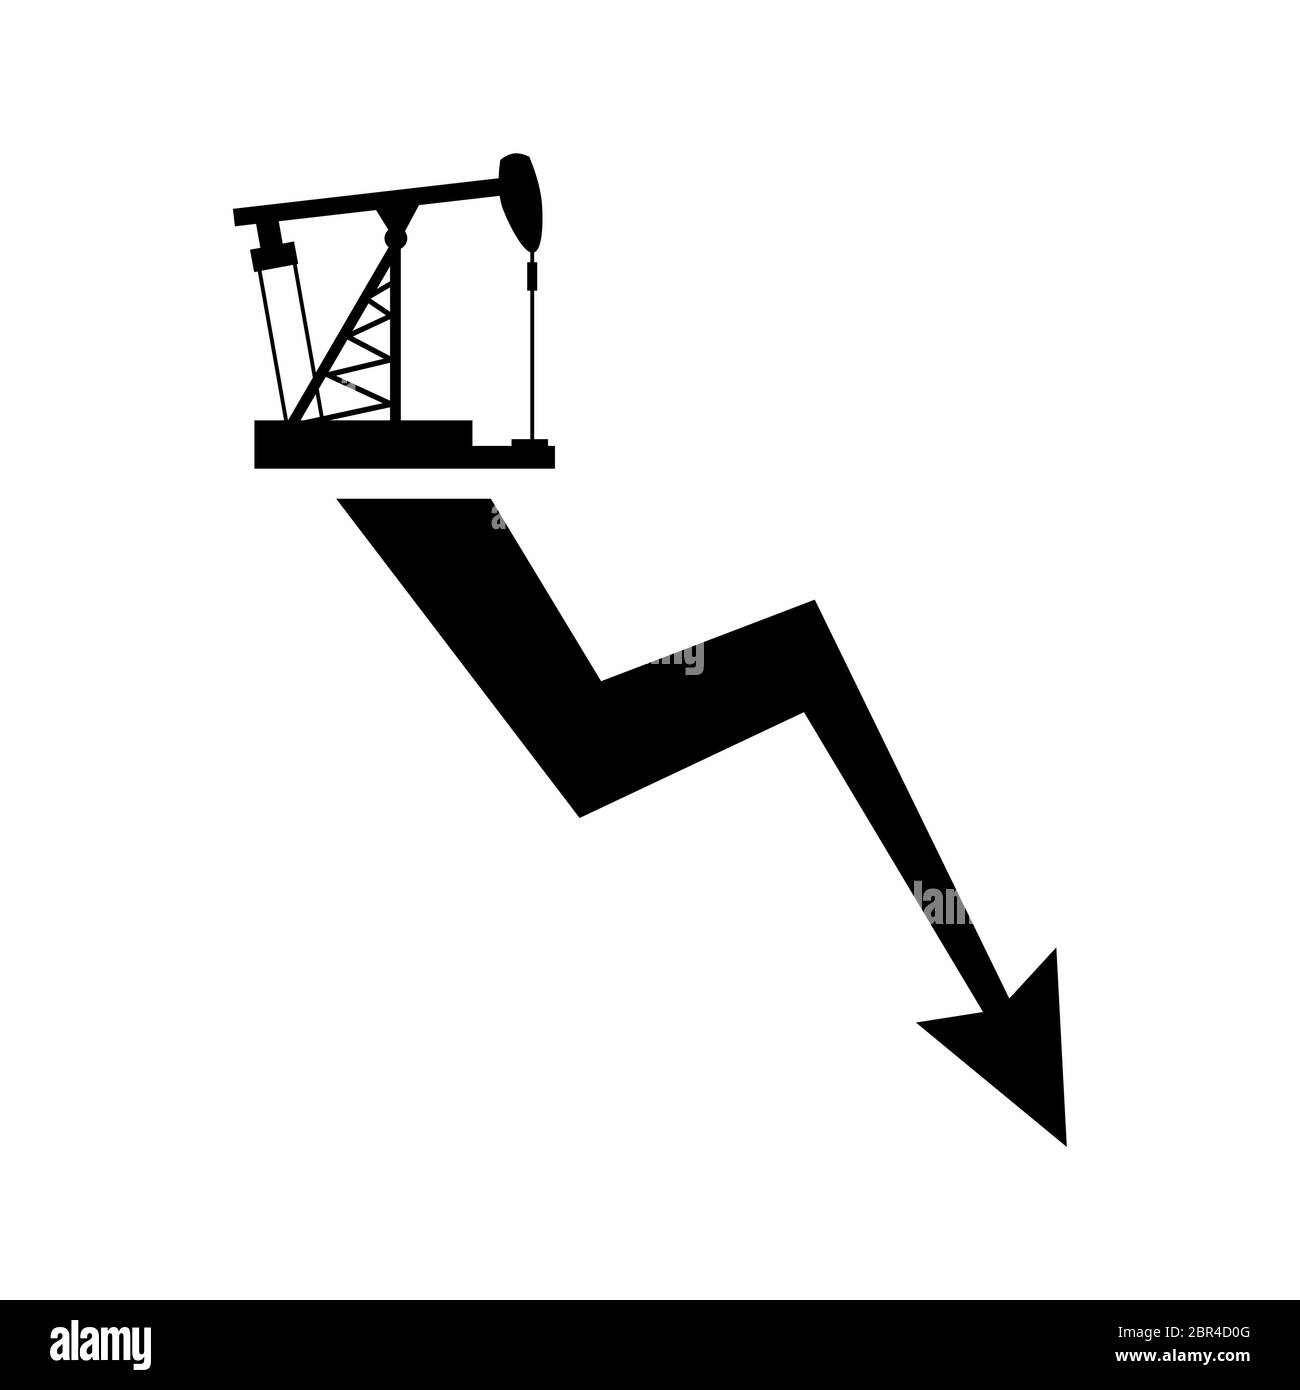 Tableau des prix plus bas pour le pétrole et les produits pétroliers. Graphique de baisse d'huile Illustration de Vecteur